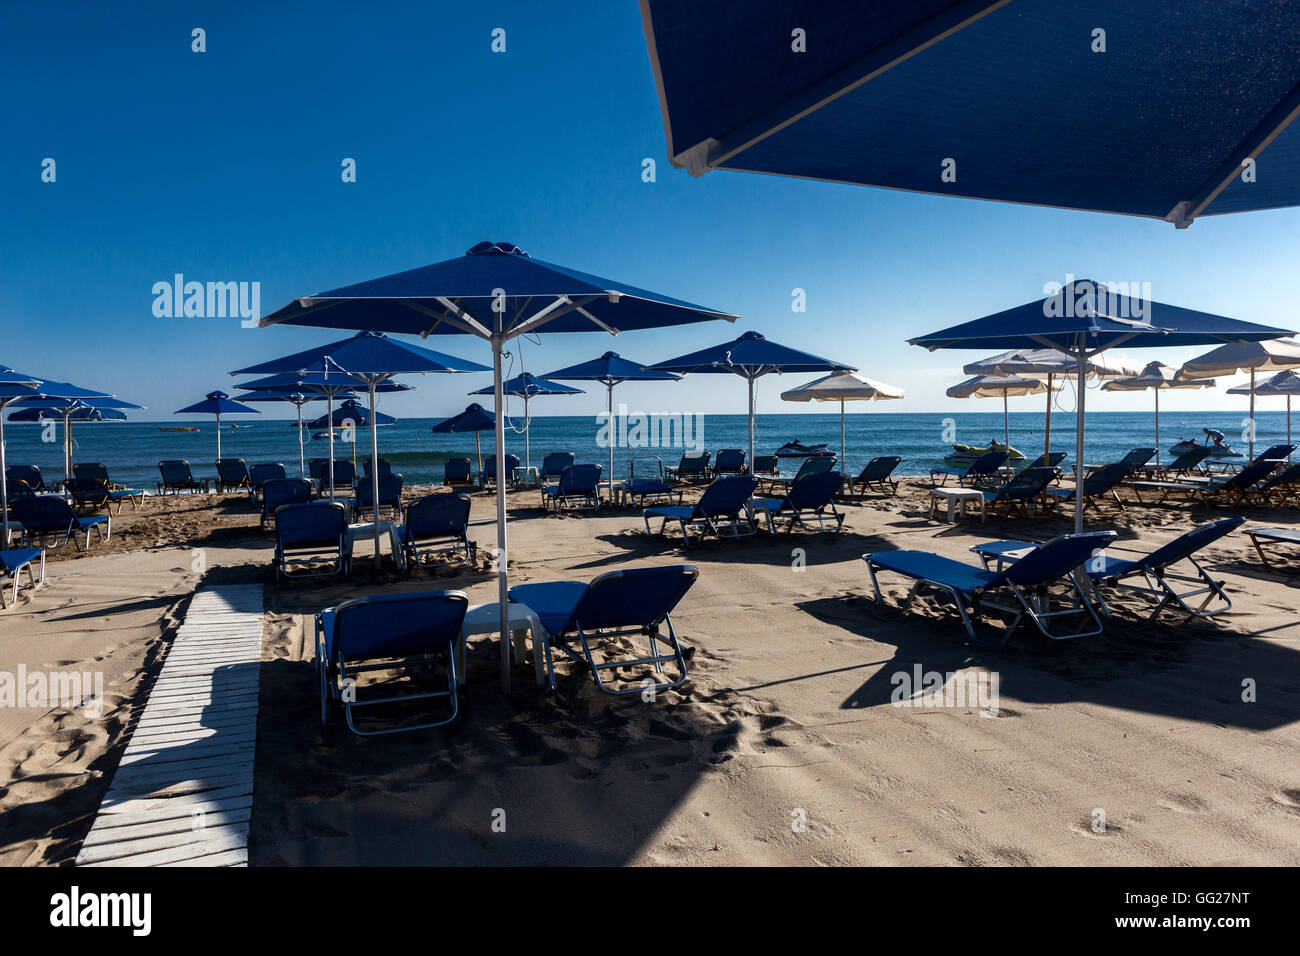 Ombrelloni e lettini in blu ingresso alla spiaggia di Rethymno, Creta spiaggia Grecia, spiaggia pronta per l'arrivo dei vacanzieri Foto Stock